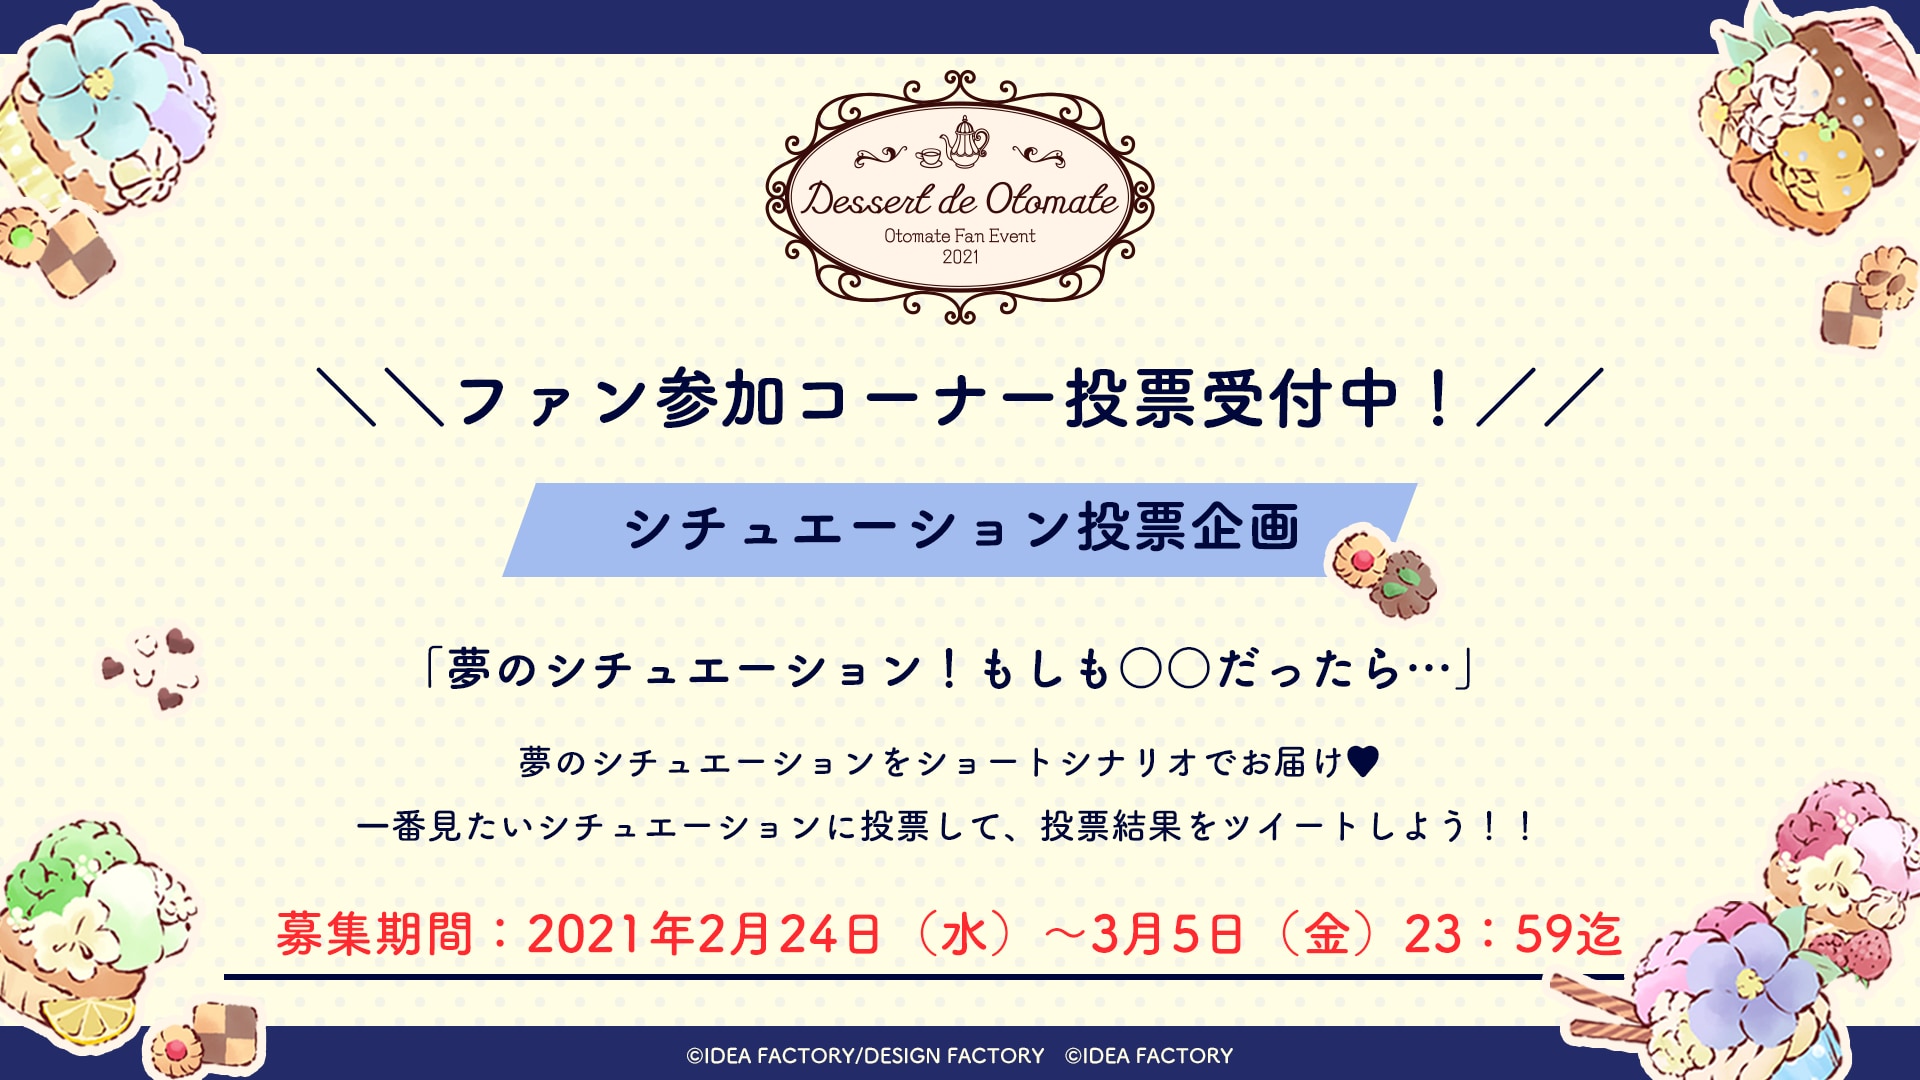 オトメイトファンイベント「Dessert de Otomate」ファン参加型コーナー詳細